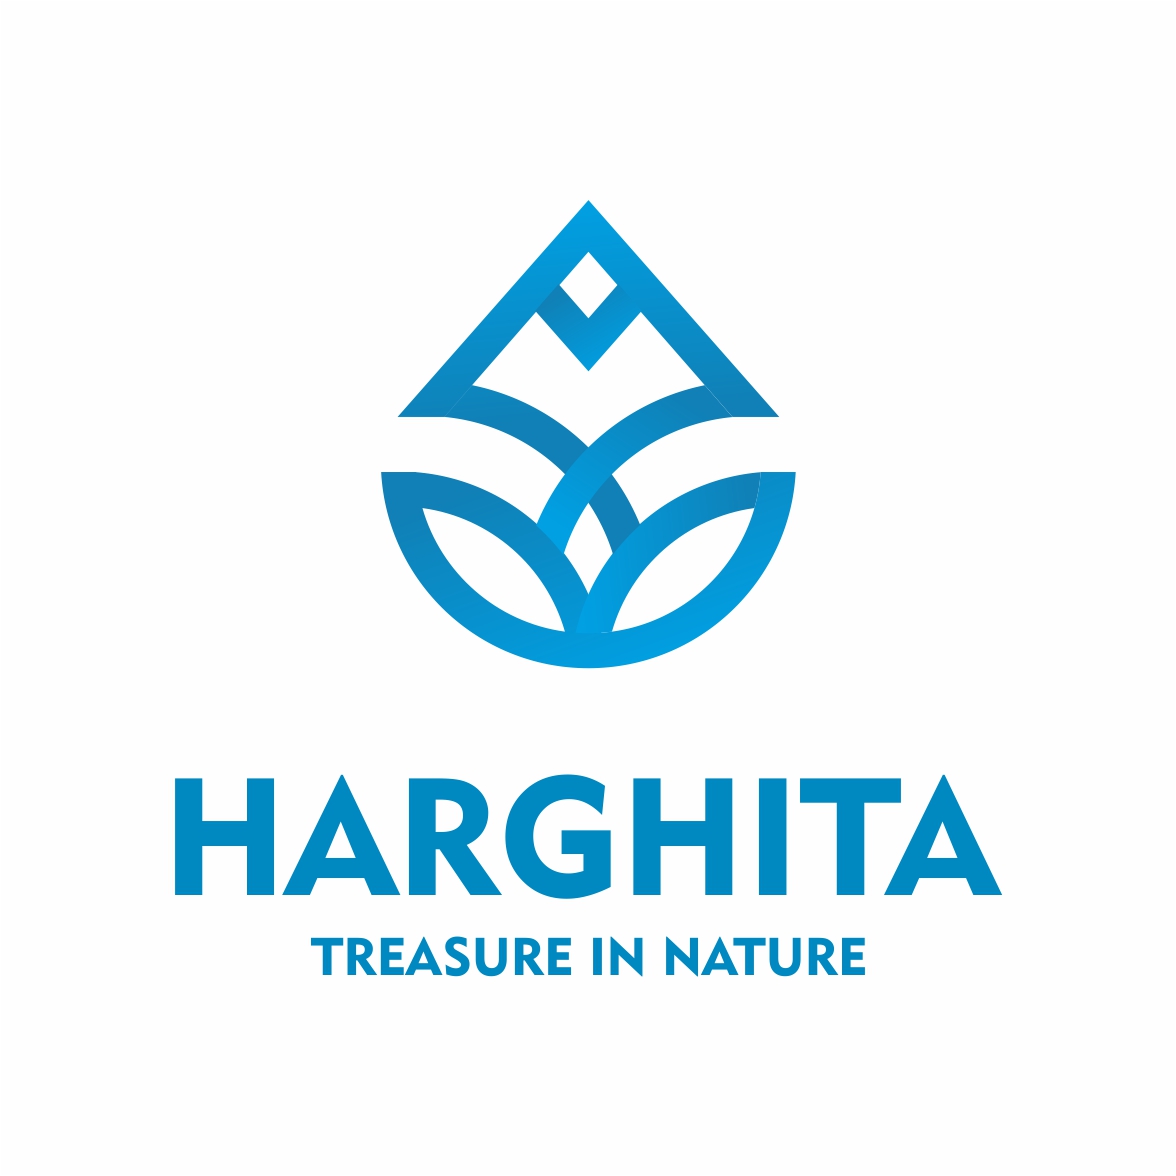 Visit Hargita - Treasure in nature